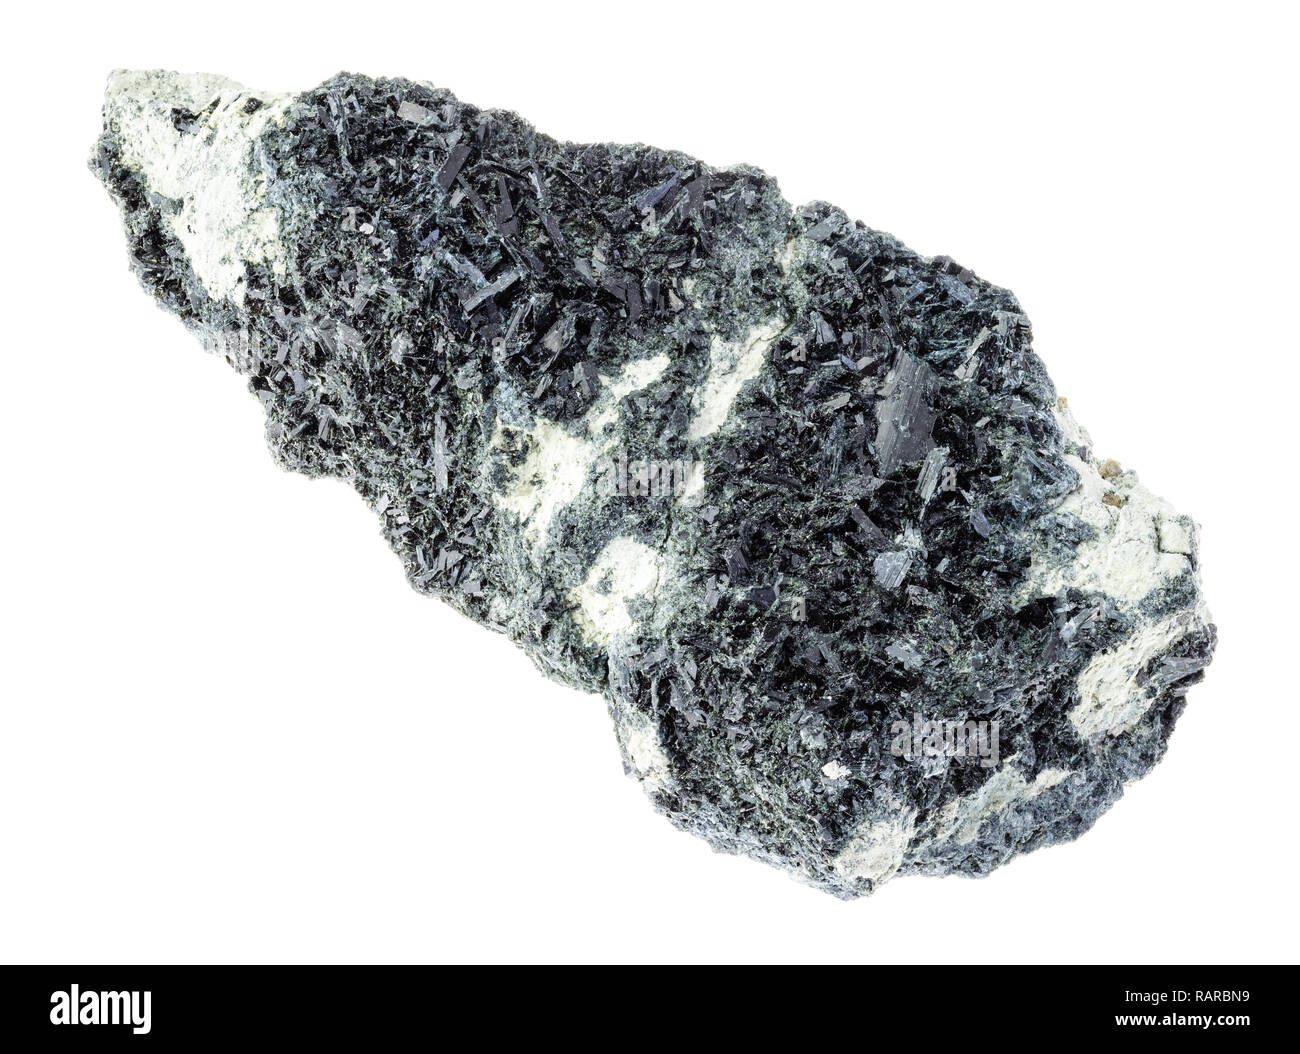 Makrofotografie von natürlichen Mineral aus geologische Sammlung - hornblende Kristalle auf raw amphibole - karbonatfelsen auf weißem Hintergrund Stockfoto